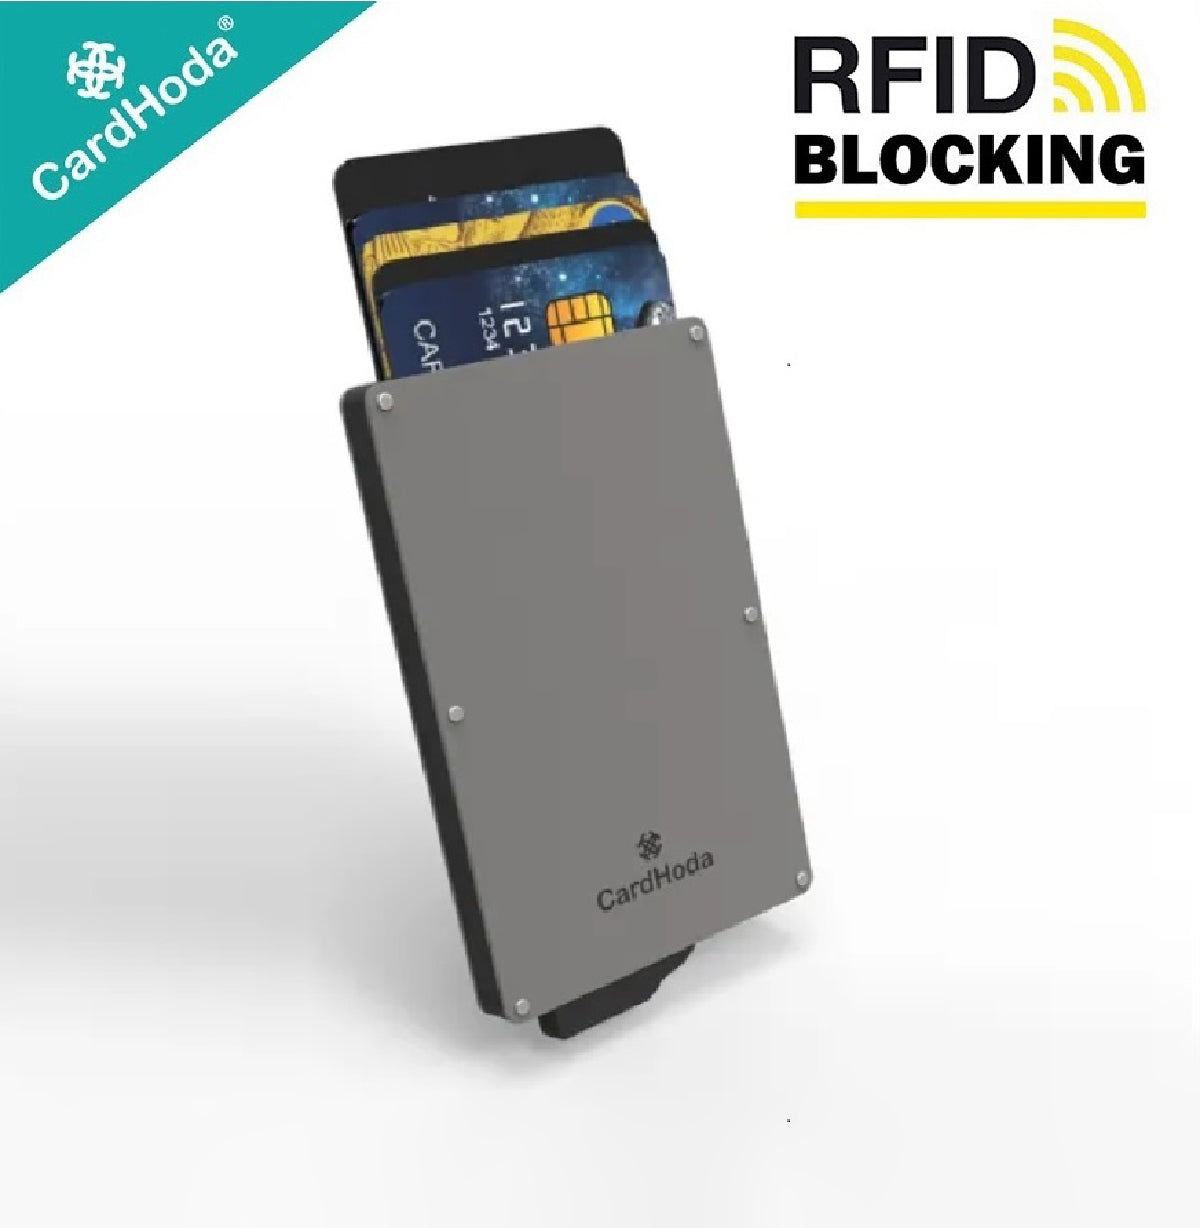 [寄海外] Cardhoda - RFID智能防護鋁盒卡套 (灰色)